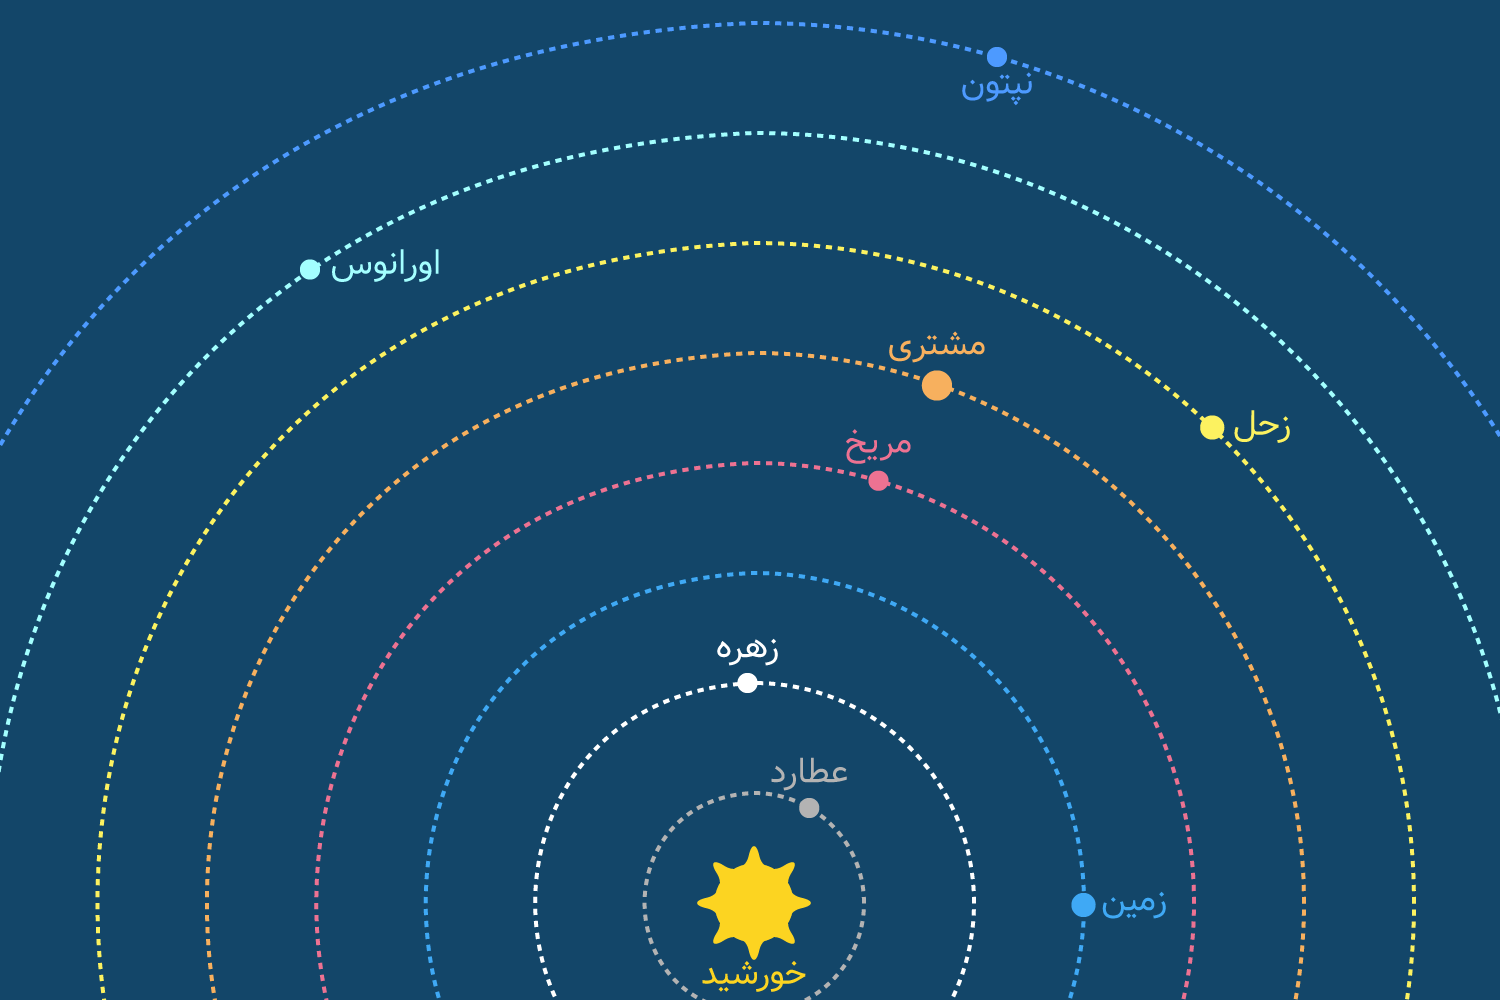 موقعیت سیارات در مدار در 17 ژوئن 1401